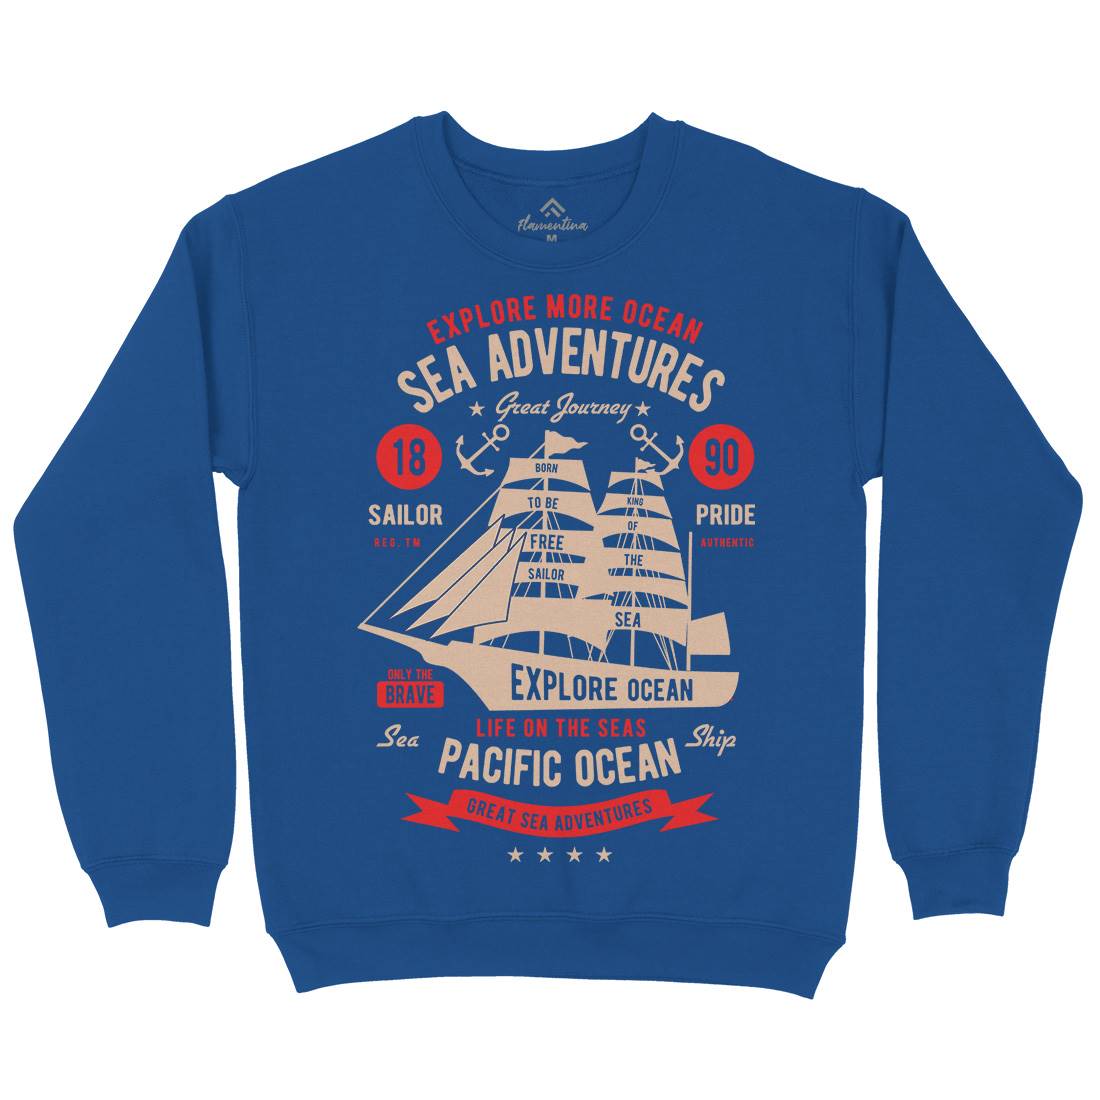 Sea Adventures Kids Crew Neck Sweatshirt Navy B446